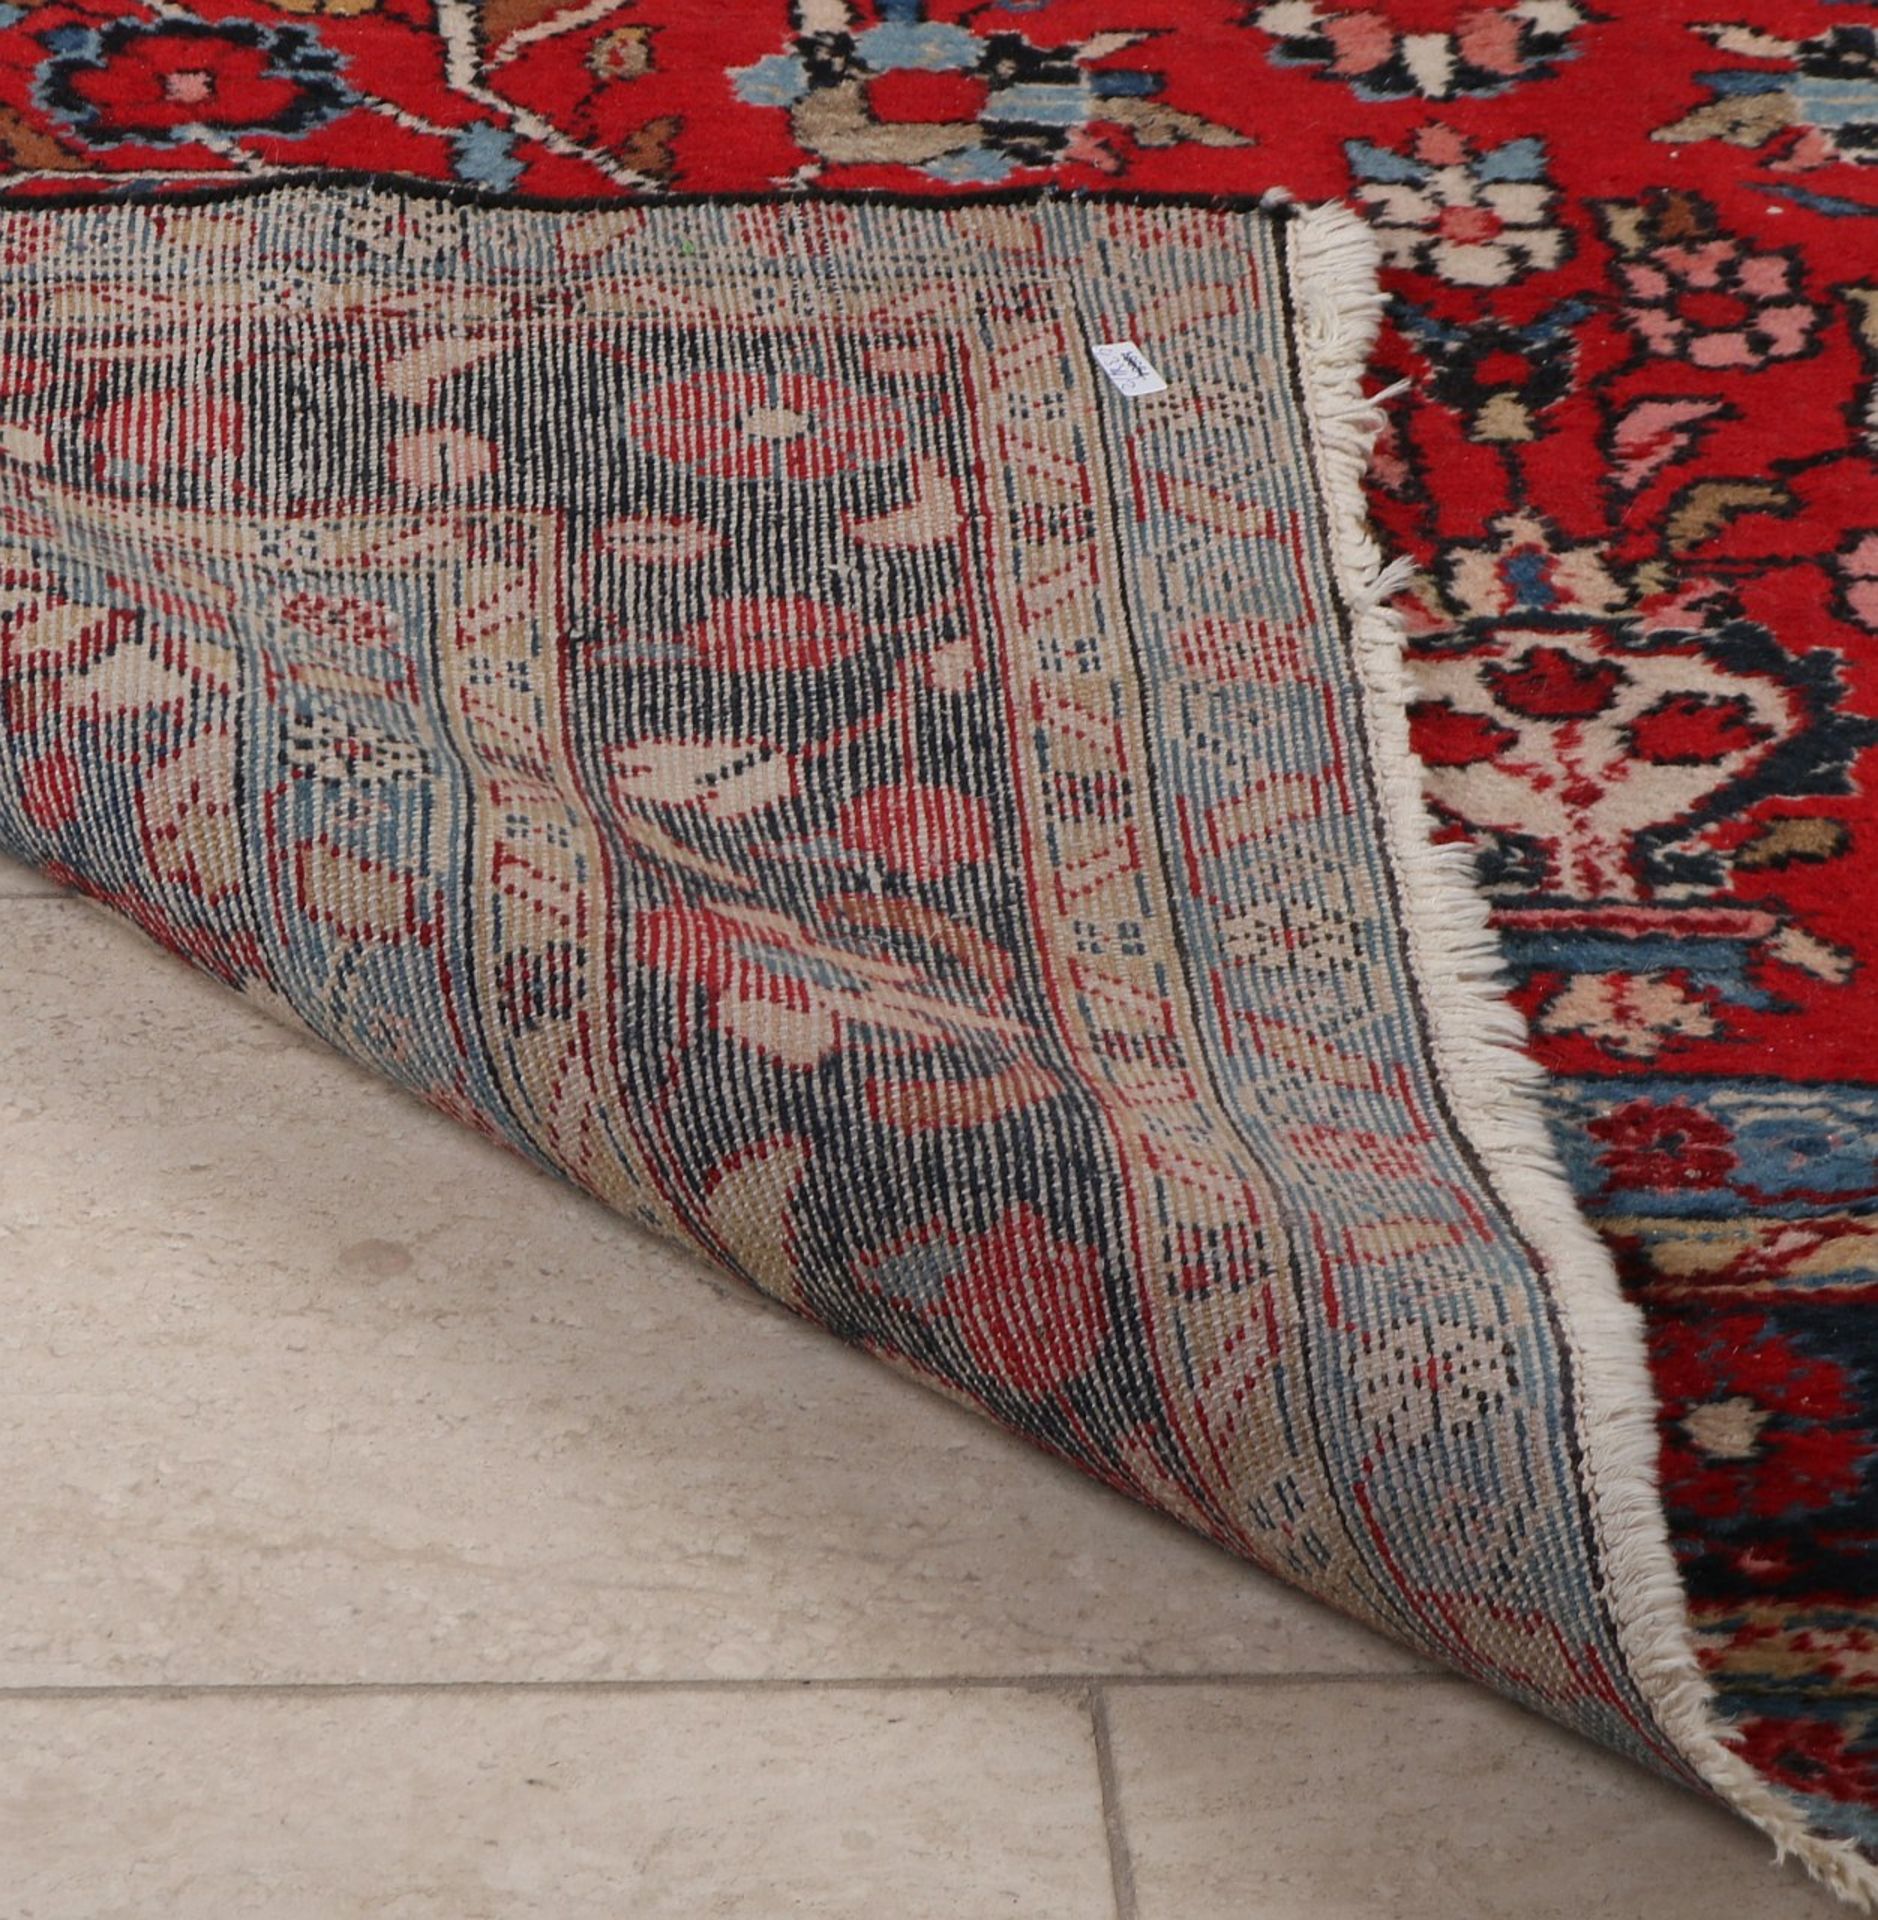 Persian rug, 233 x 150 cm. - Bild 4 aus 4